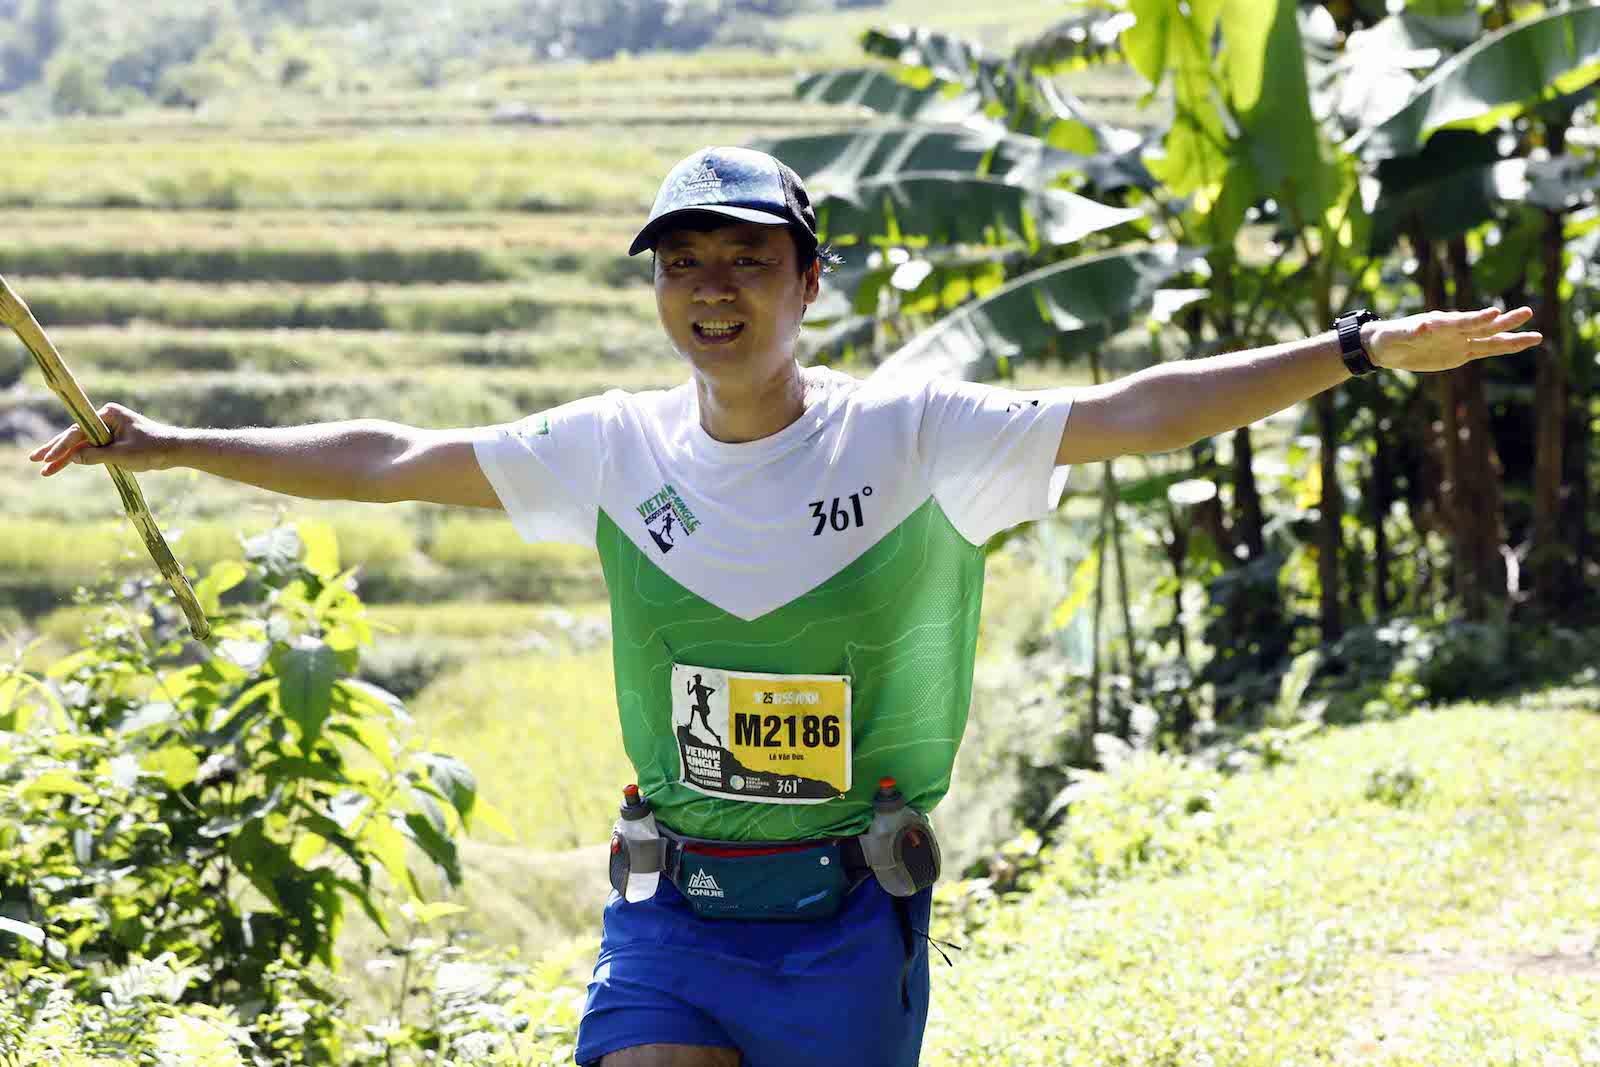 [QC] Du lịch thể thao tiếp tục lên ngôI vớI giảI chạy Vietnam Jungle Marathon Pù Luông 2020 - du lich the thao tiep tuc len ngoi voi vietnam jungle marathon 2